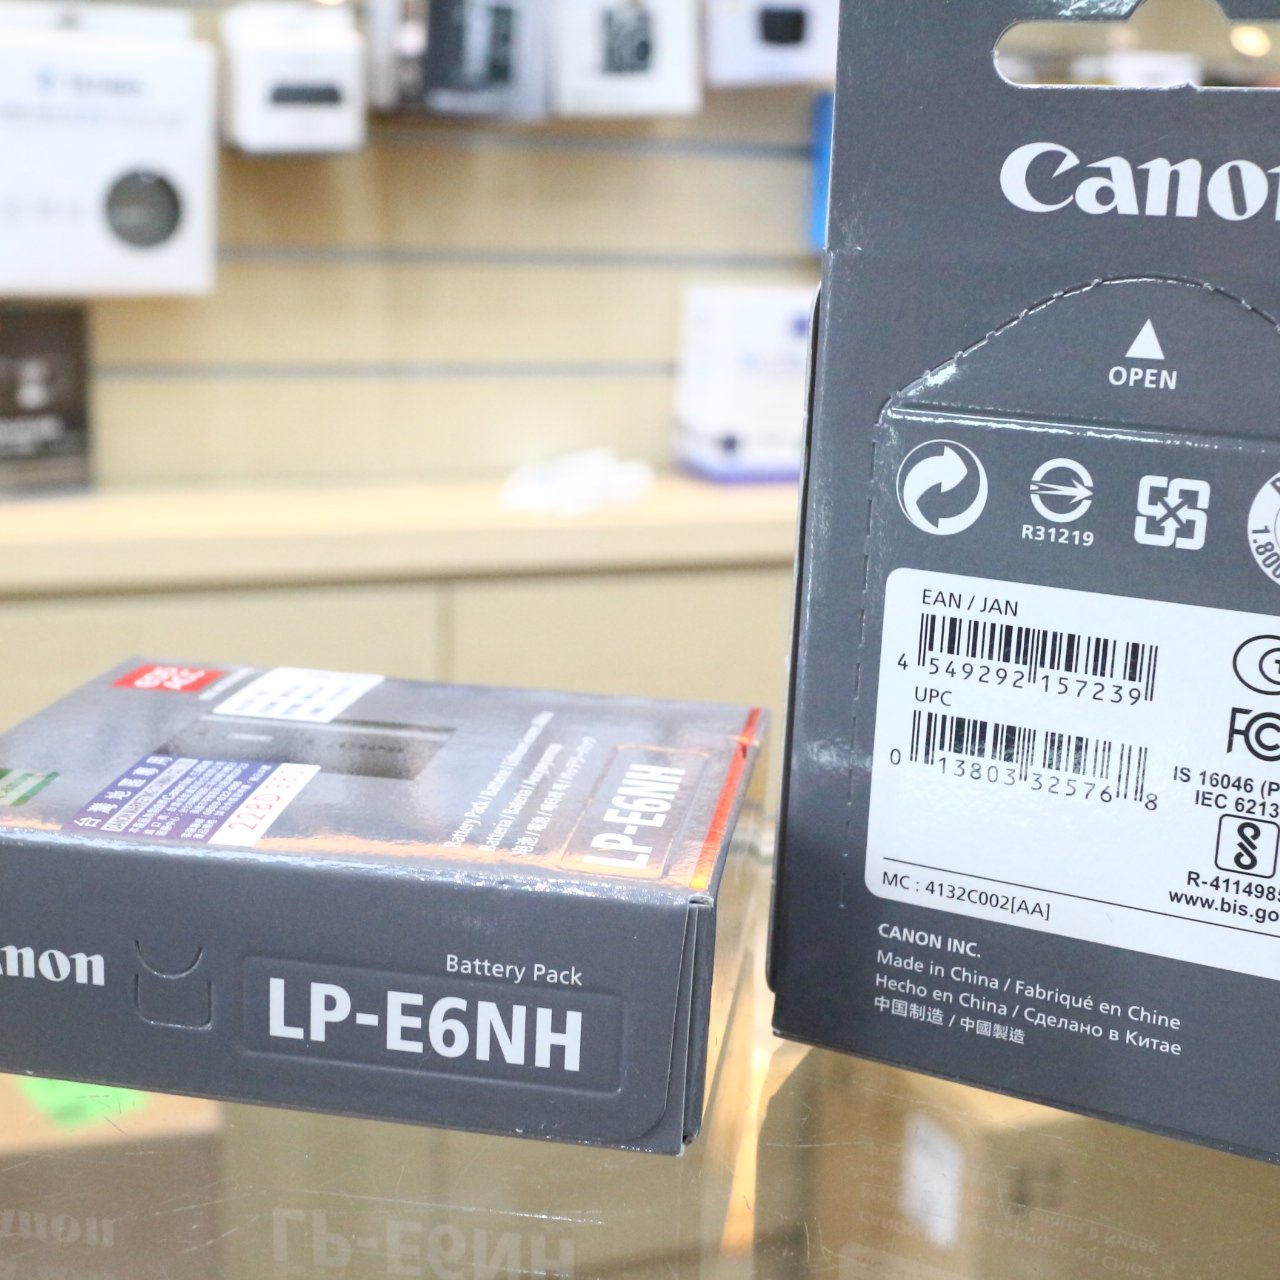 日產旗艦】現貨全新原廠公司貨盒裝新版Canon LP-E6NH LPE6NH 原廠電池